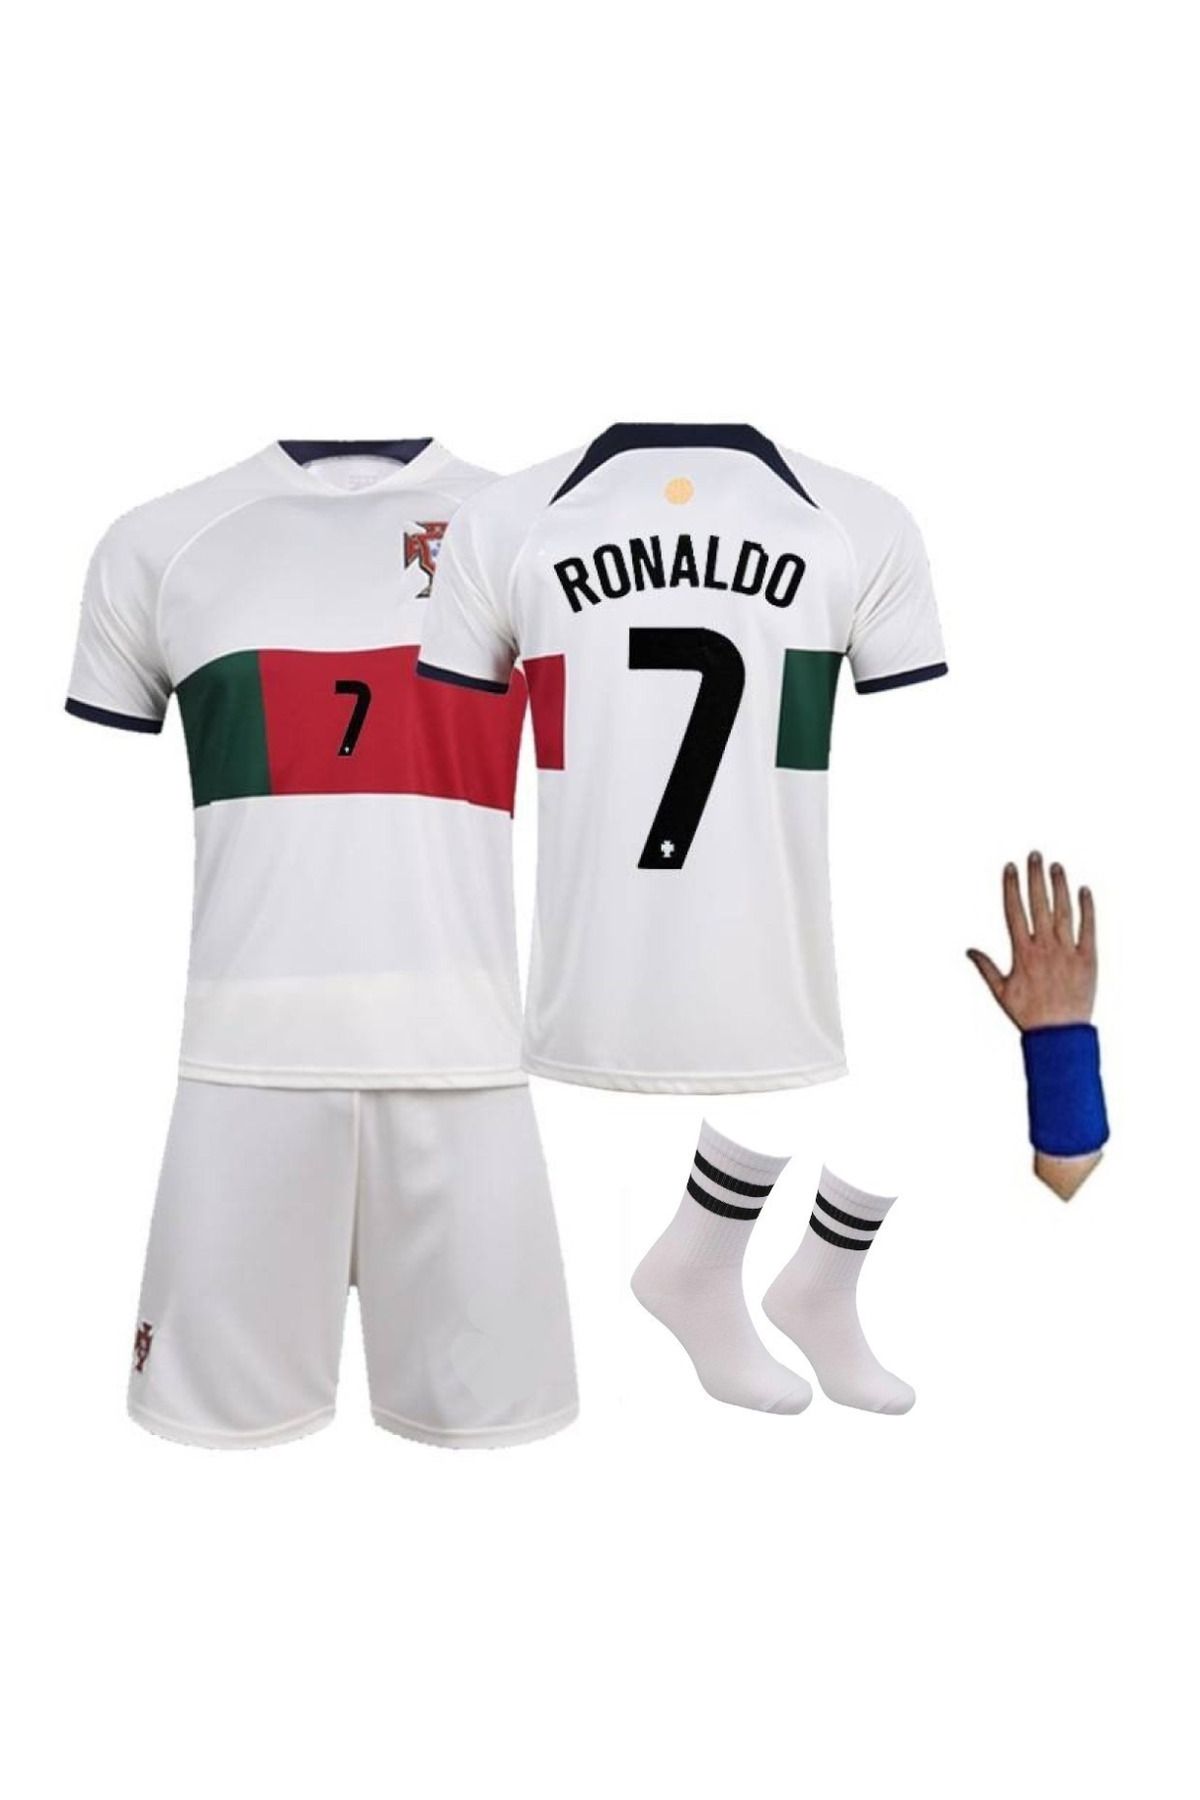 yenteks Ronaldo Çocuk Futbol Forması Takımı 3 Lü Set Beyaz Portekiz Dünya Kupası Forma Takımı